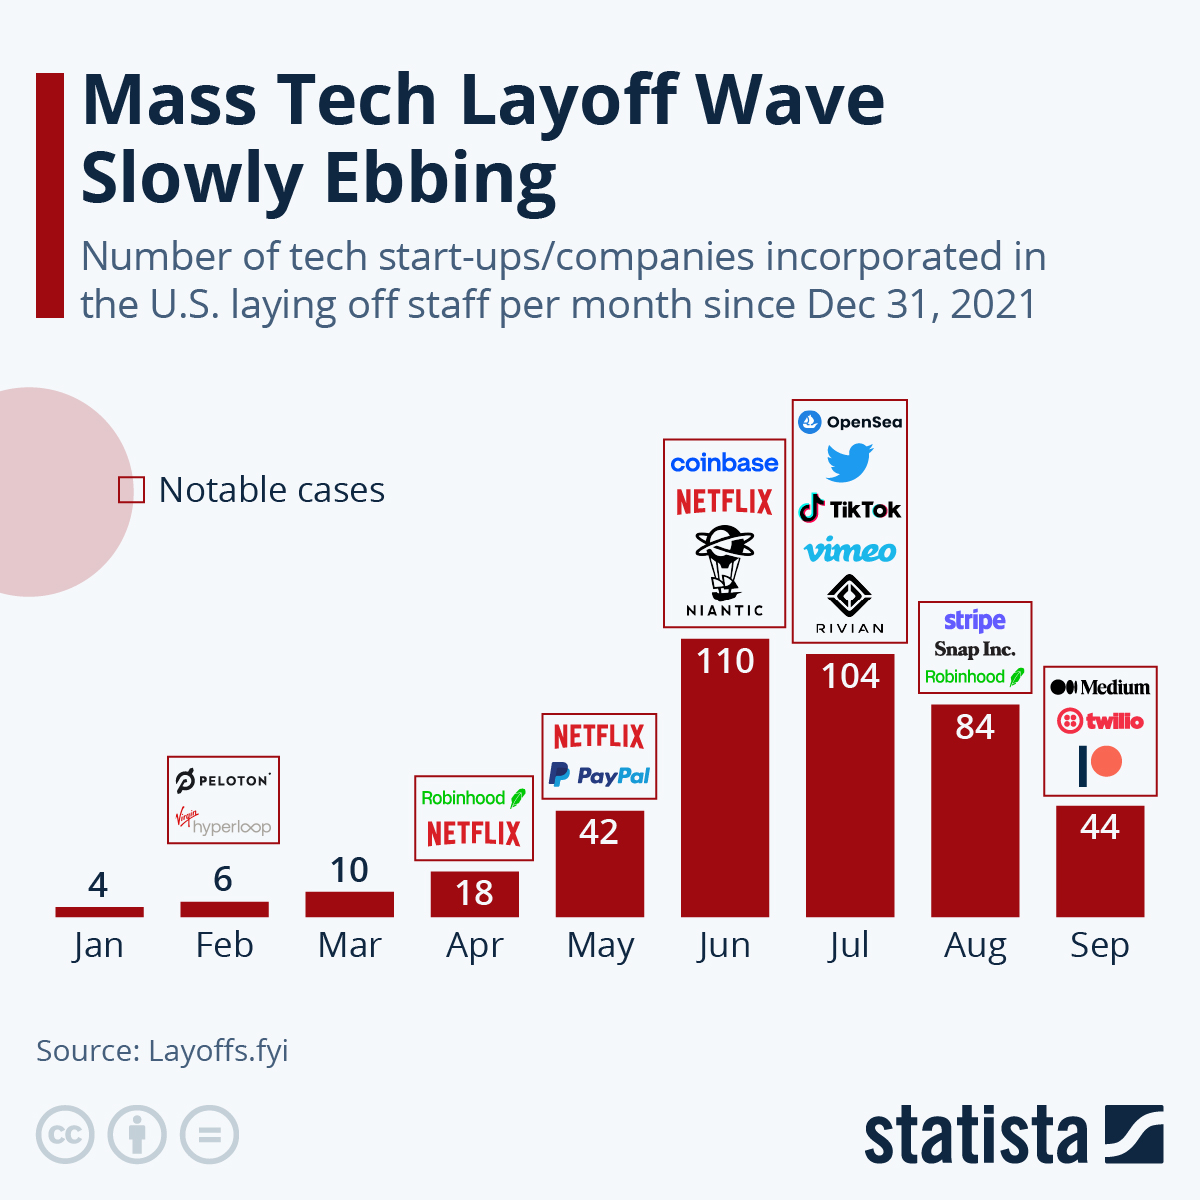 Mass Tech Layoff Wave Slowly Ebbing